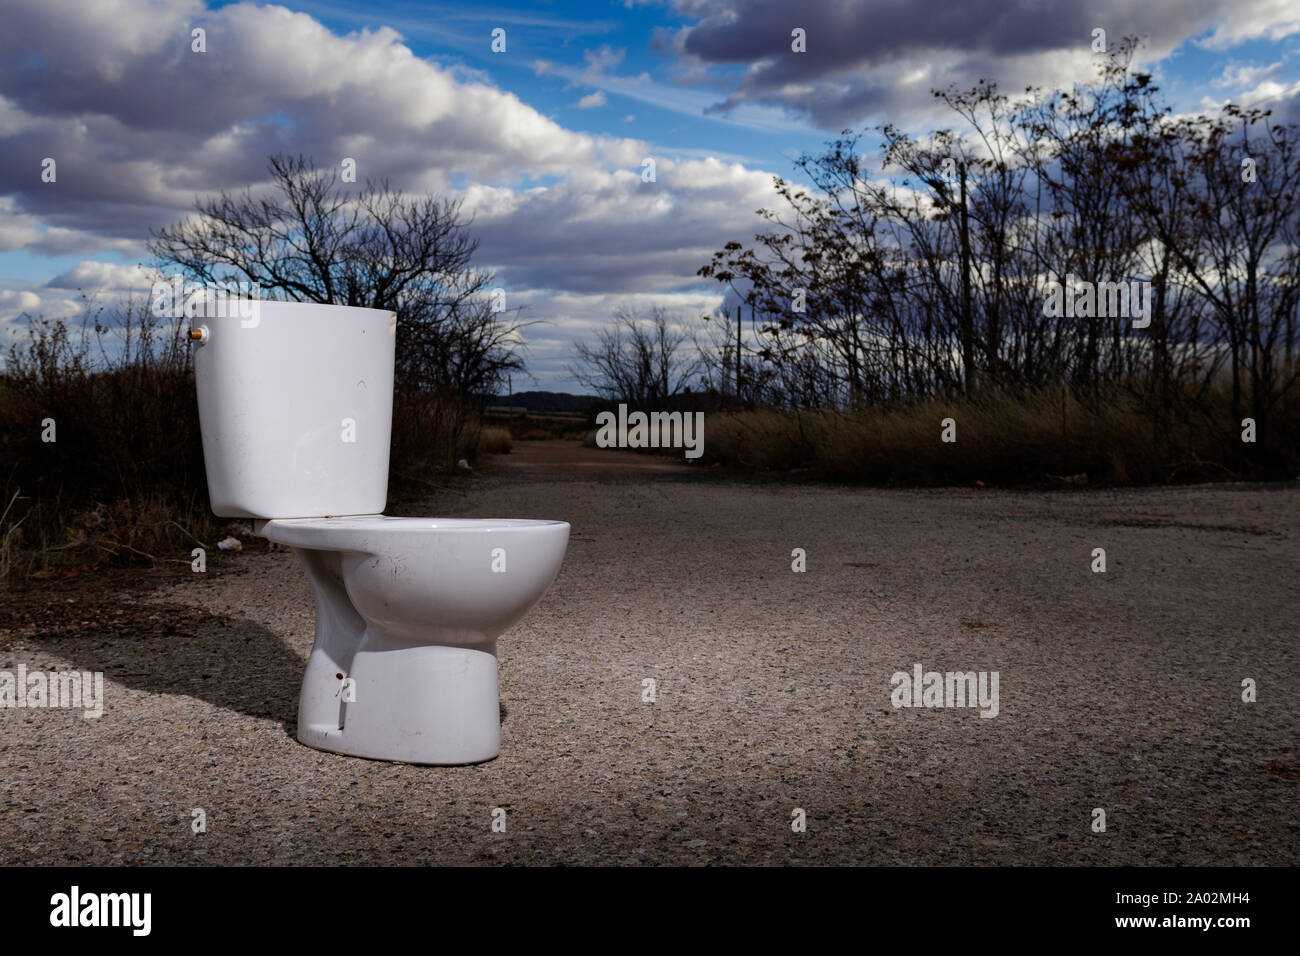 Toilettes blanc déposé sur une route rurale en Espagne Banque D'Images